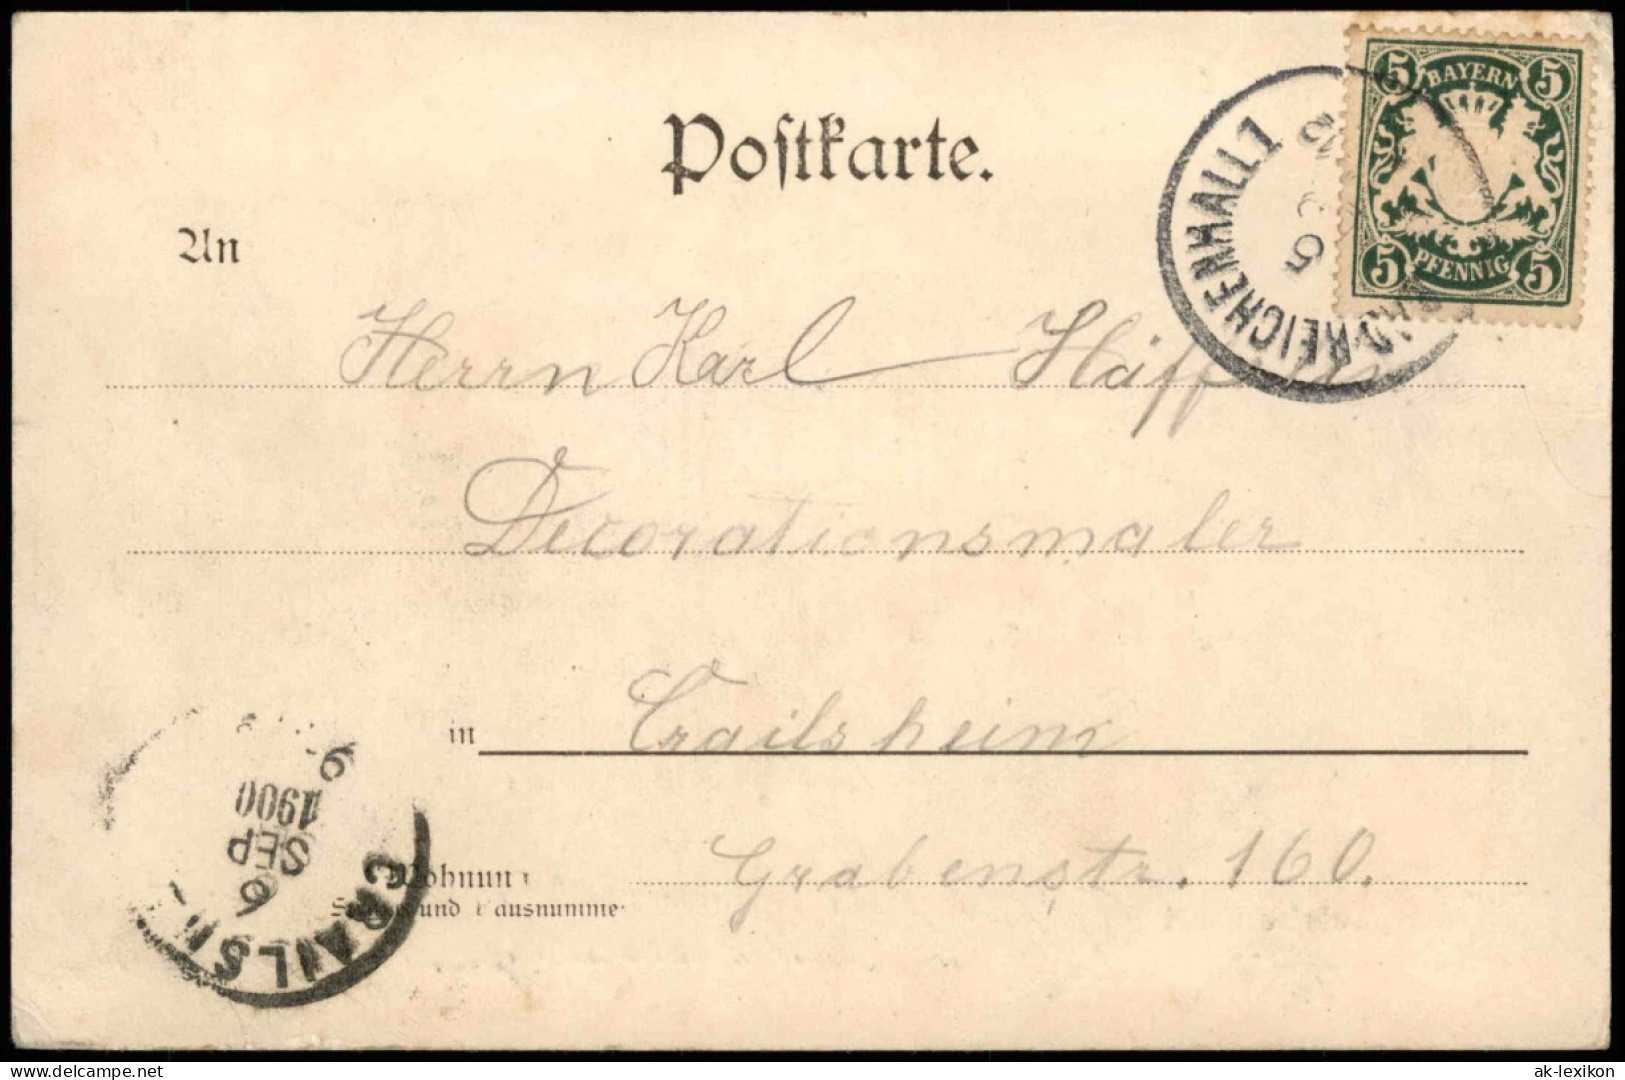 Ansichtskarte Bad Reichenhall Stadtpartie 1900 - Bad Reichenhall